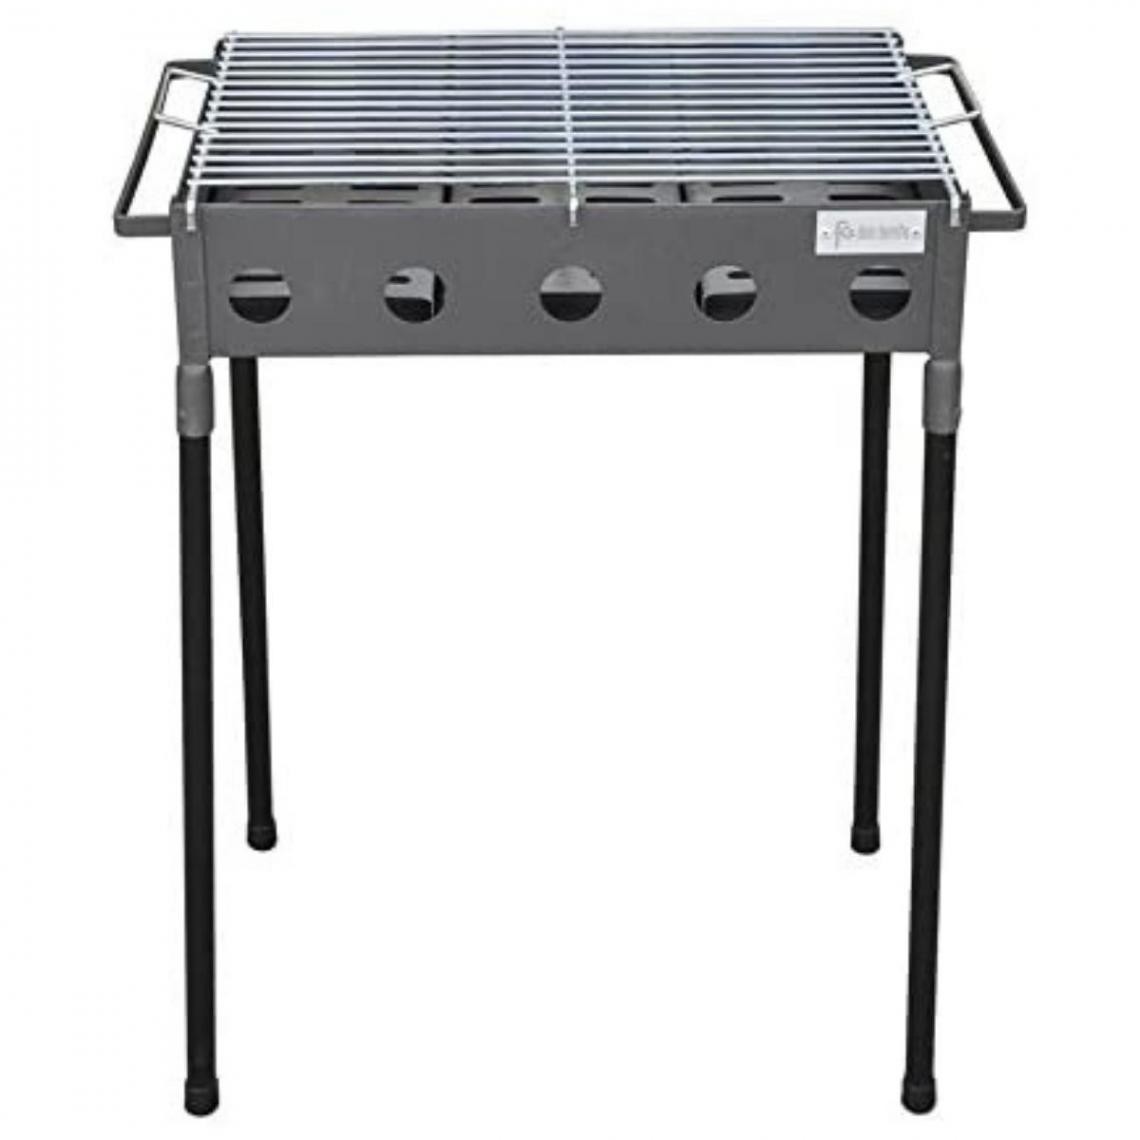 Visiodirect - Barbecue rectangulaire en Acier inoxydable coloris Gris - 51 x 33 x 60 cm - Barbecues charbon de bois